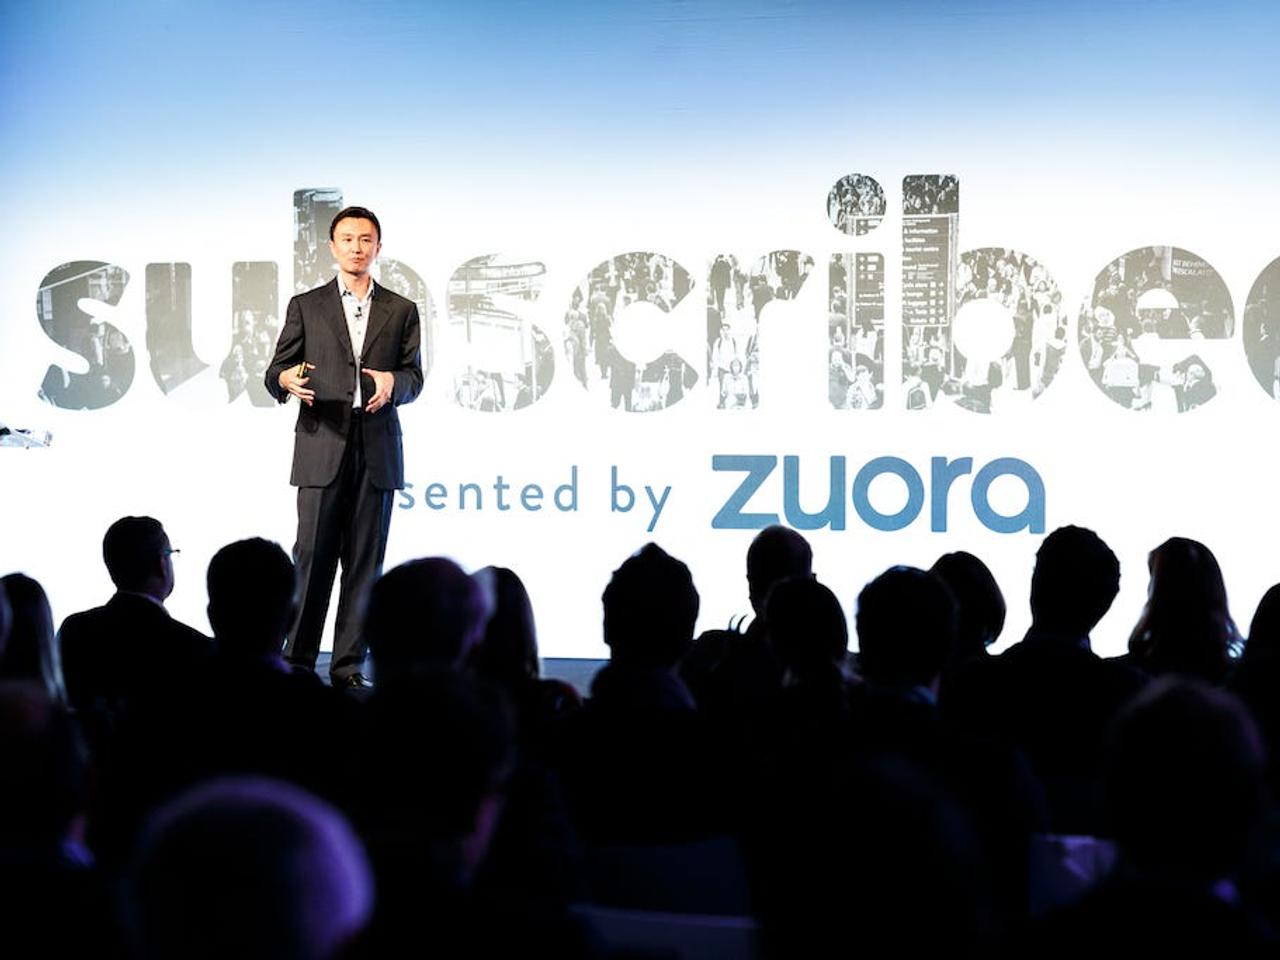 Zuoraのティエン・ツォCEOは、優れたクラウド企業は｢あらゆる顧客に対応できるような課金モデル組み合わせている｣と語った。